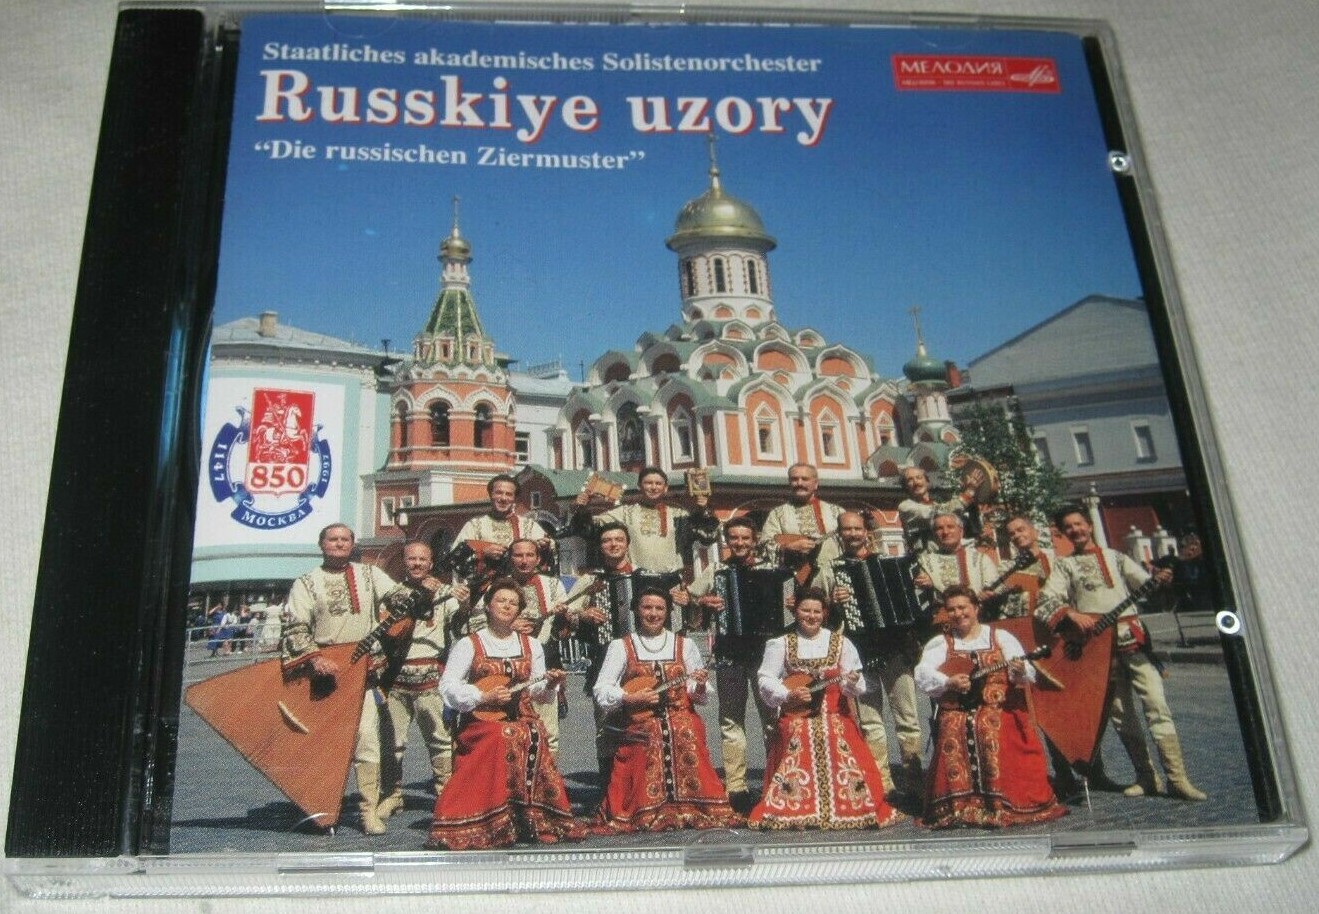 Staatliches akademisches Solistenorchester "Russkiye uzory". «Die russischen Ziermuster»